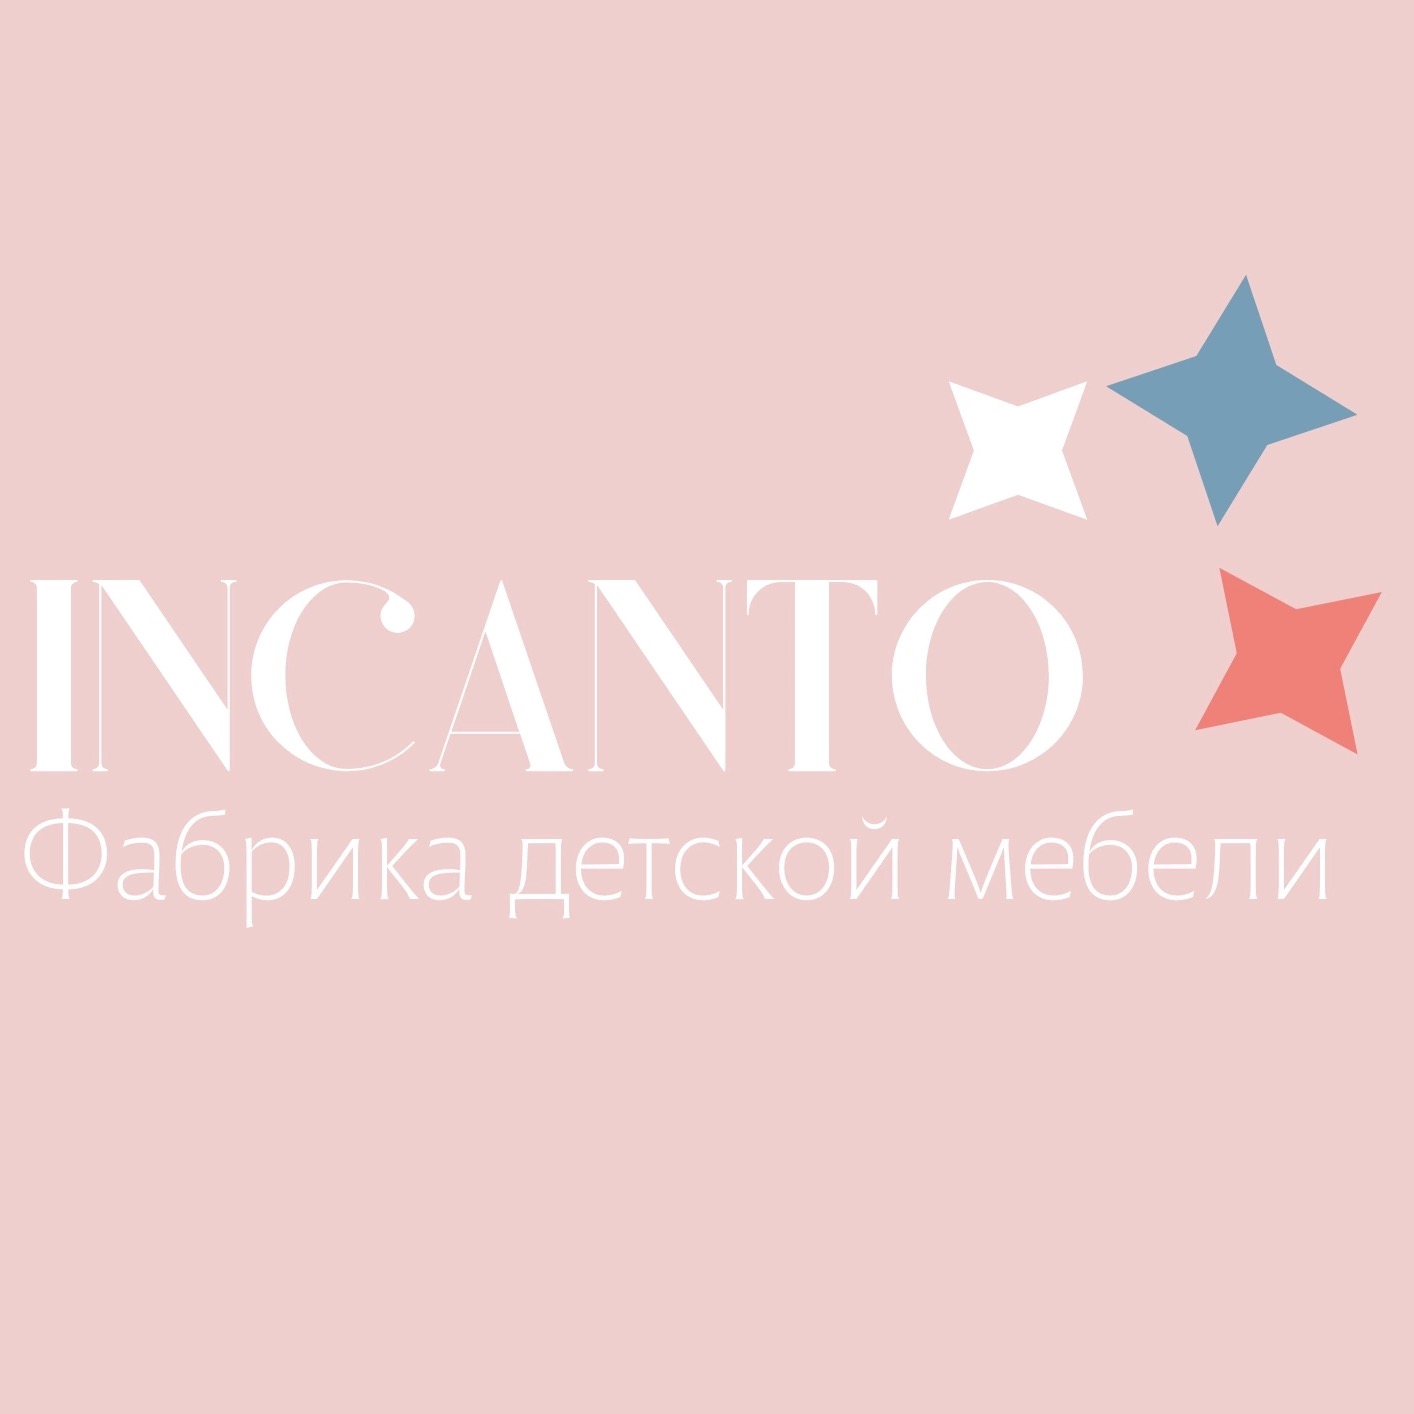 Иконка канала Фабрика детской мебели Инканто